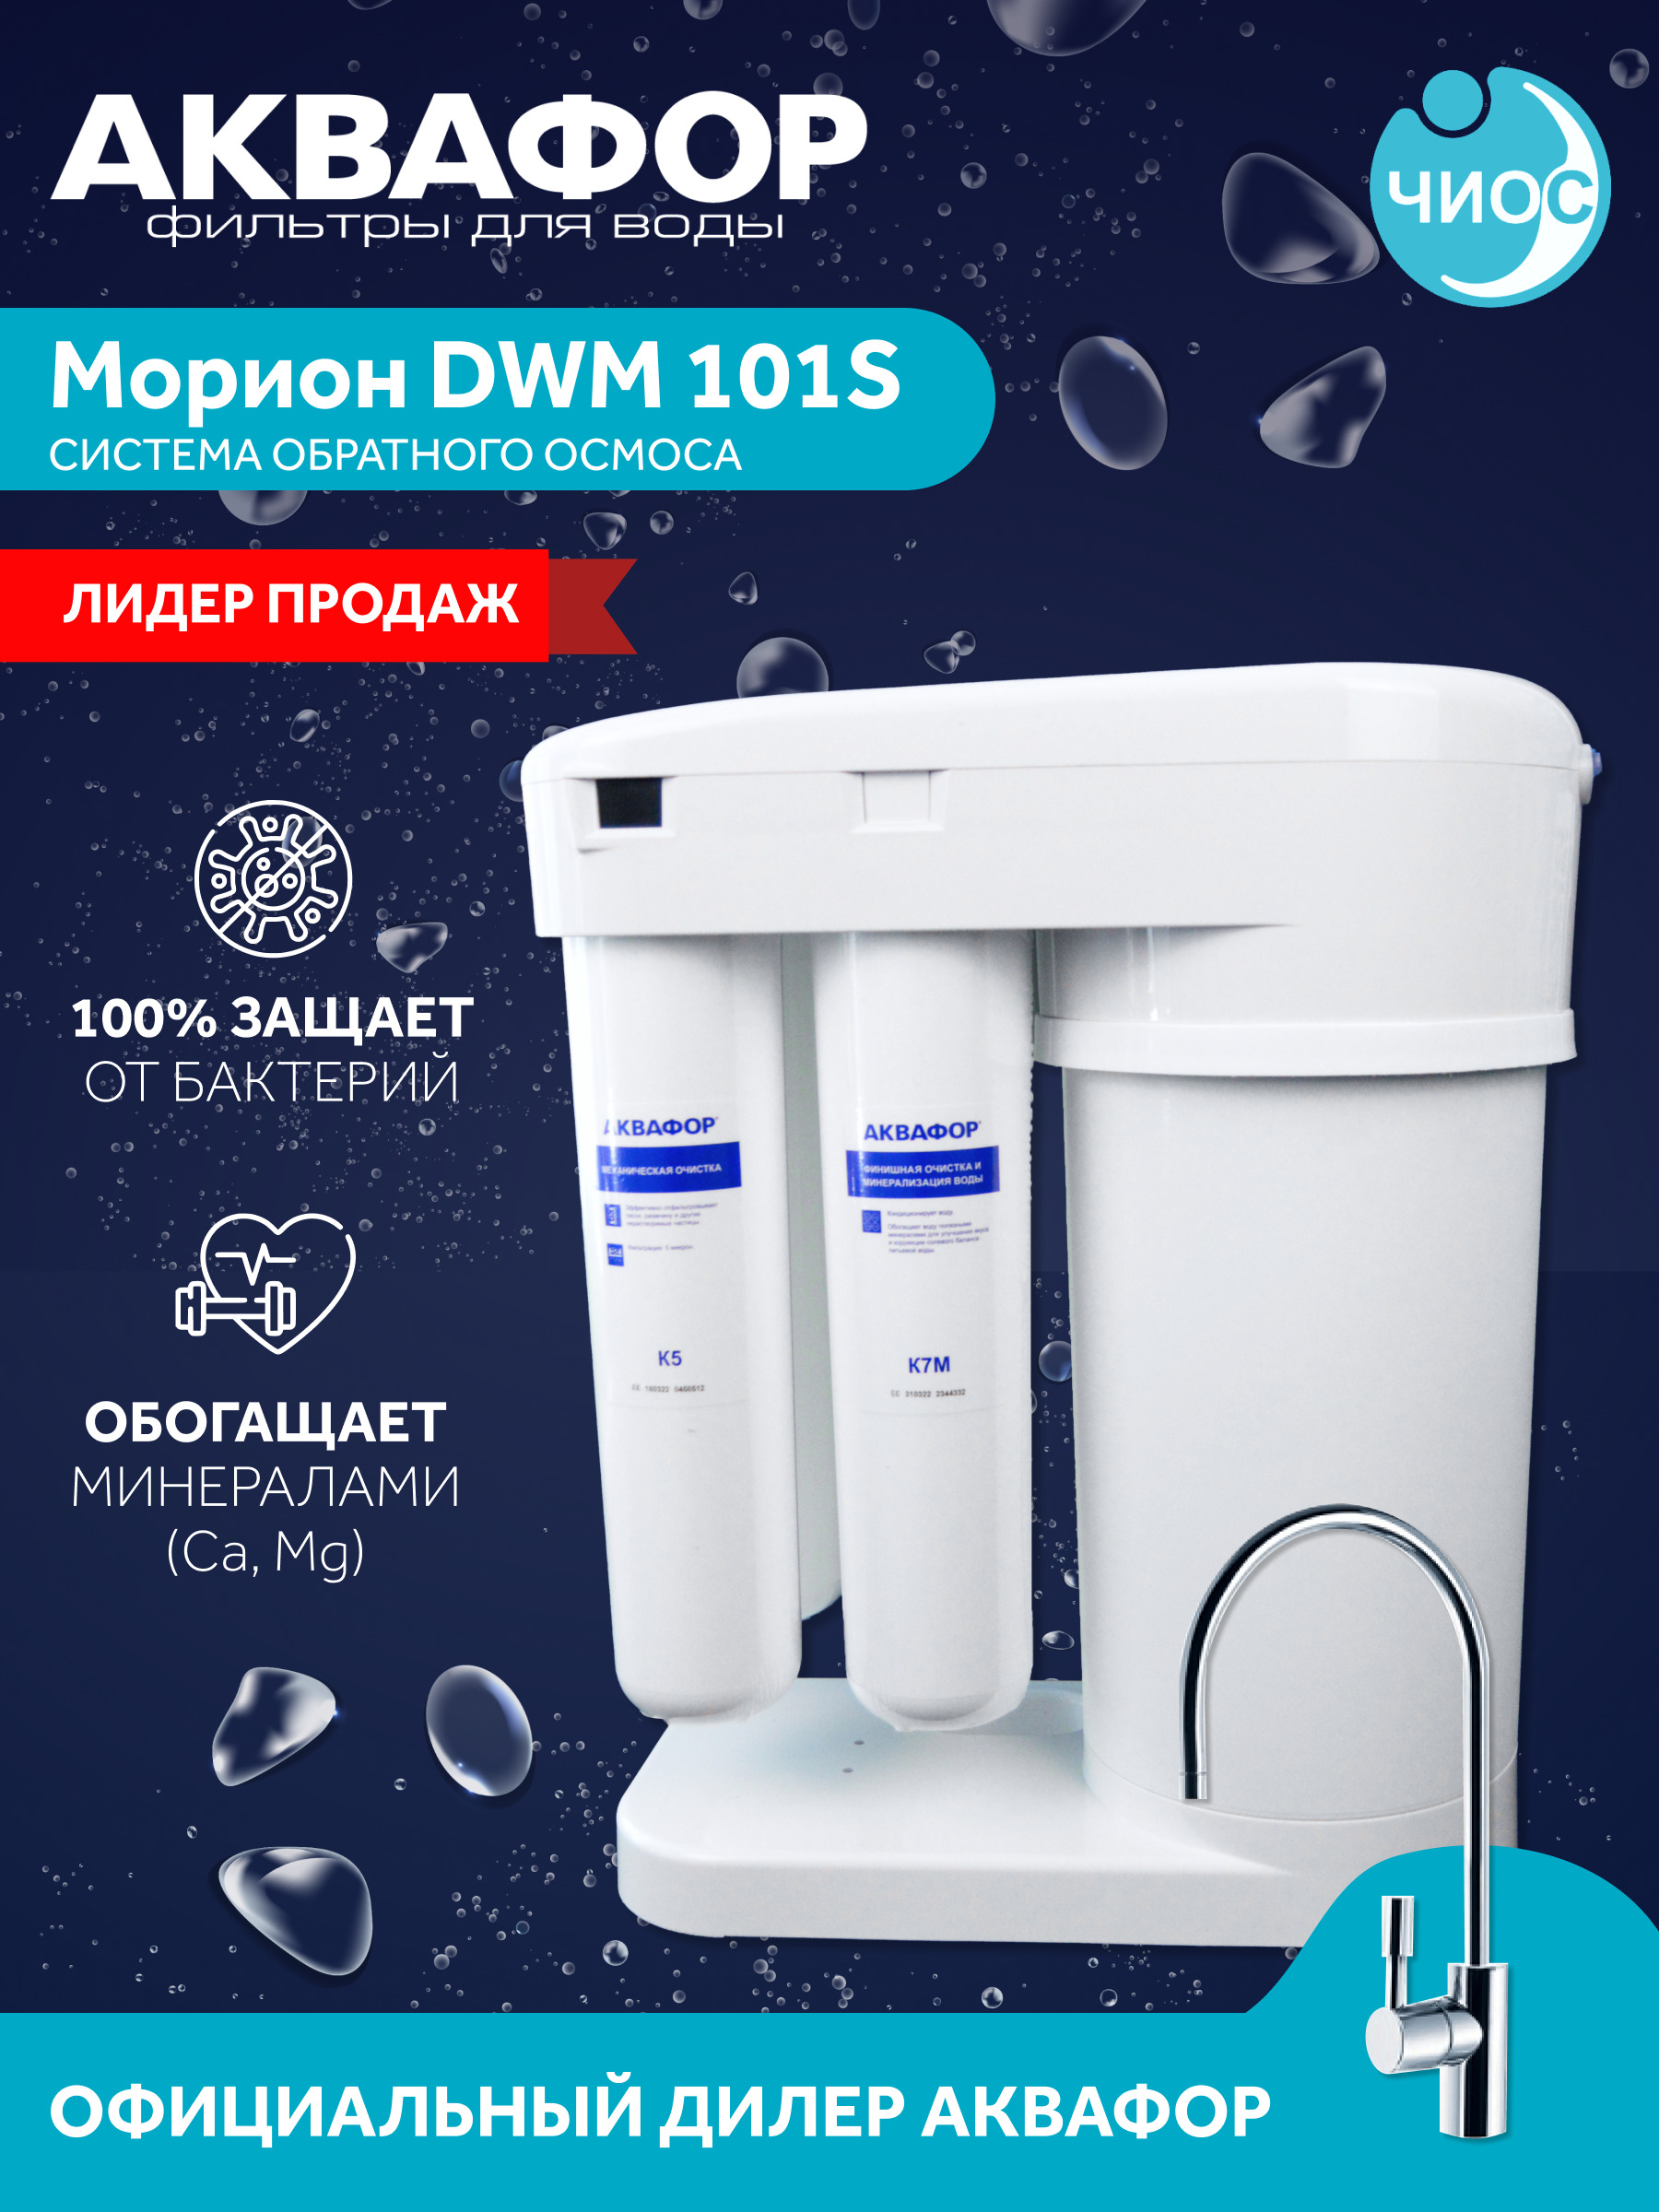 Автомат питьевой воды dwm. Автомат питьевой воды Аквафор Морион DWM-101s. Аквафор Морион 101s. Аквафор ДВМ 101с. Система DWM 101 обратного осмоса Аквафор Морион DWM 101s.